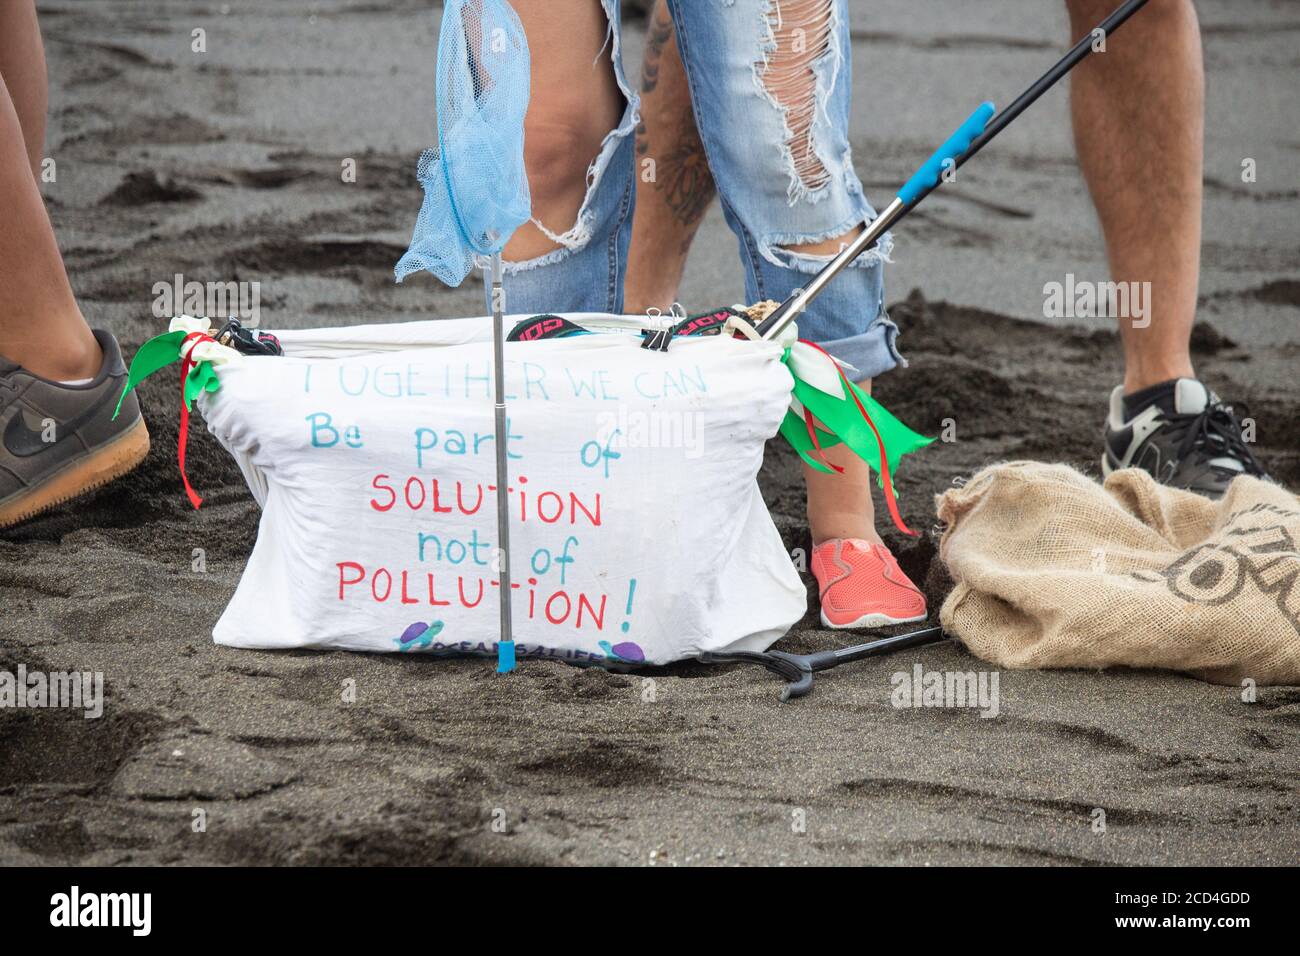 Seien Sie Teil der Lösung nicht die Verschmutzung Slogan auf Tasche während Strand sauber. Stockfoto